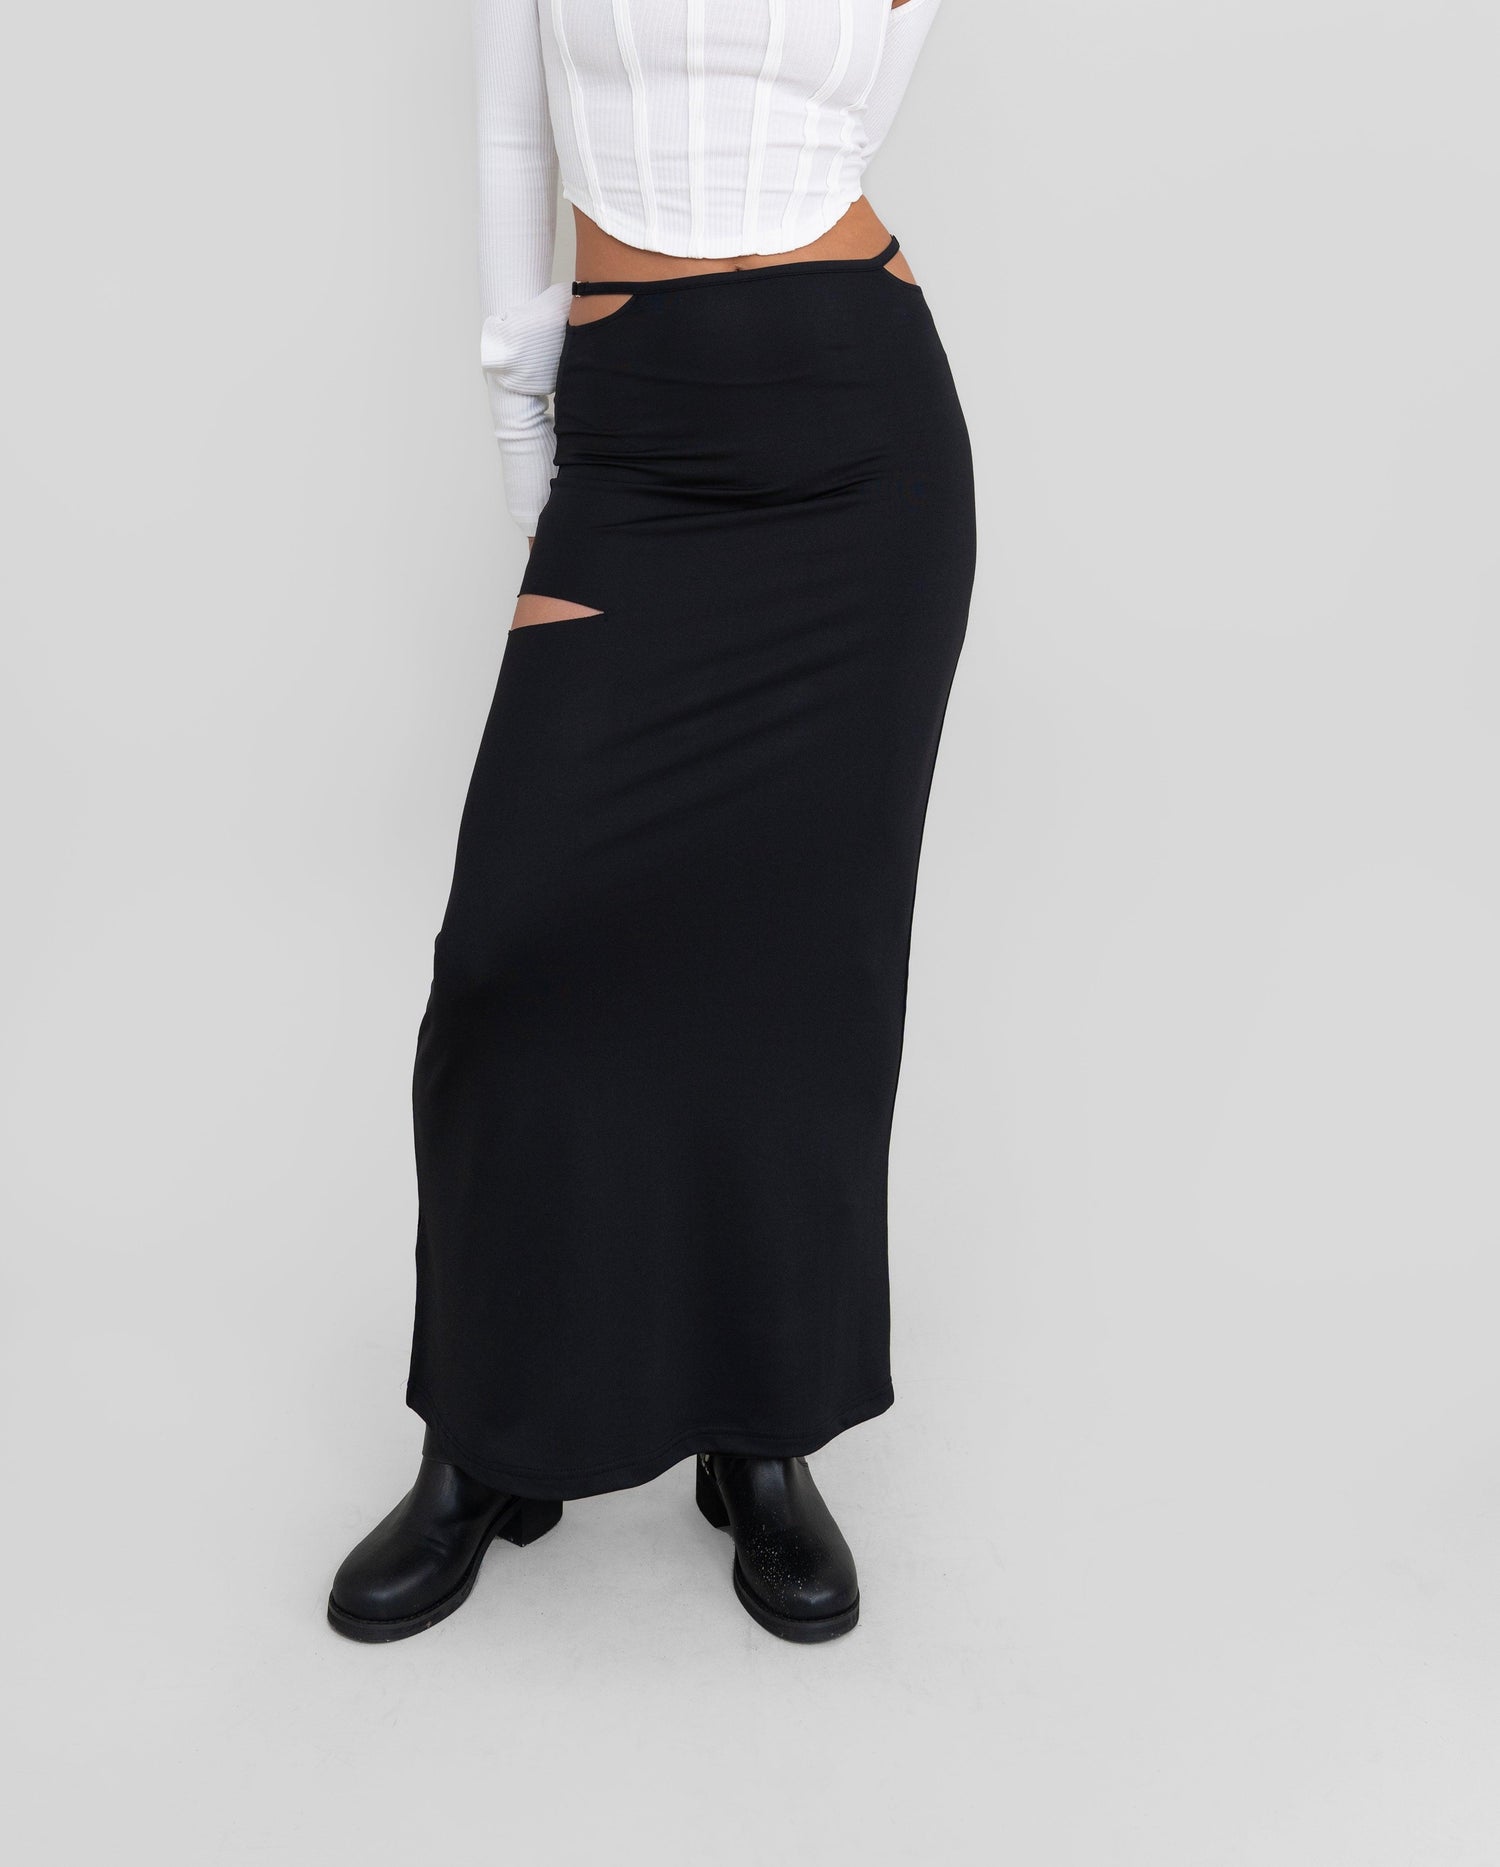 Lilibet Cutout Long Skirt / Black - The Bekk